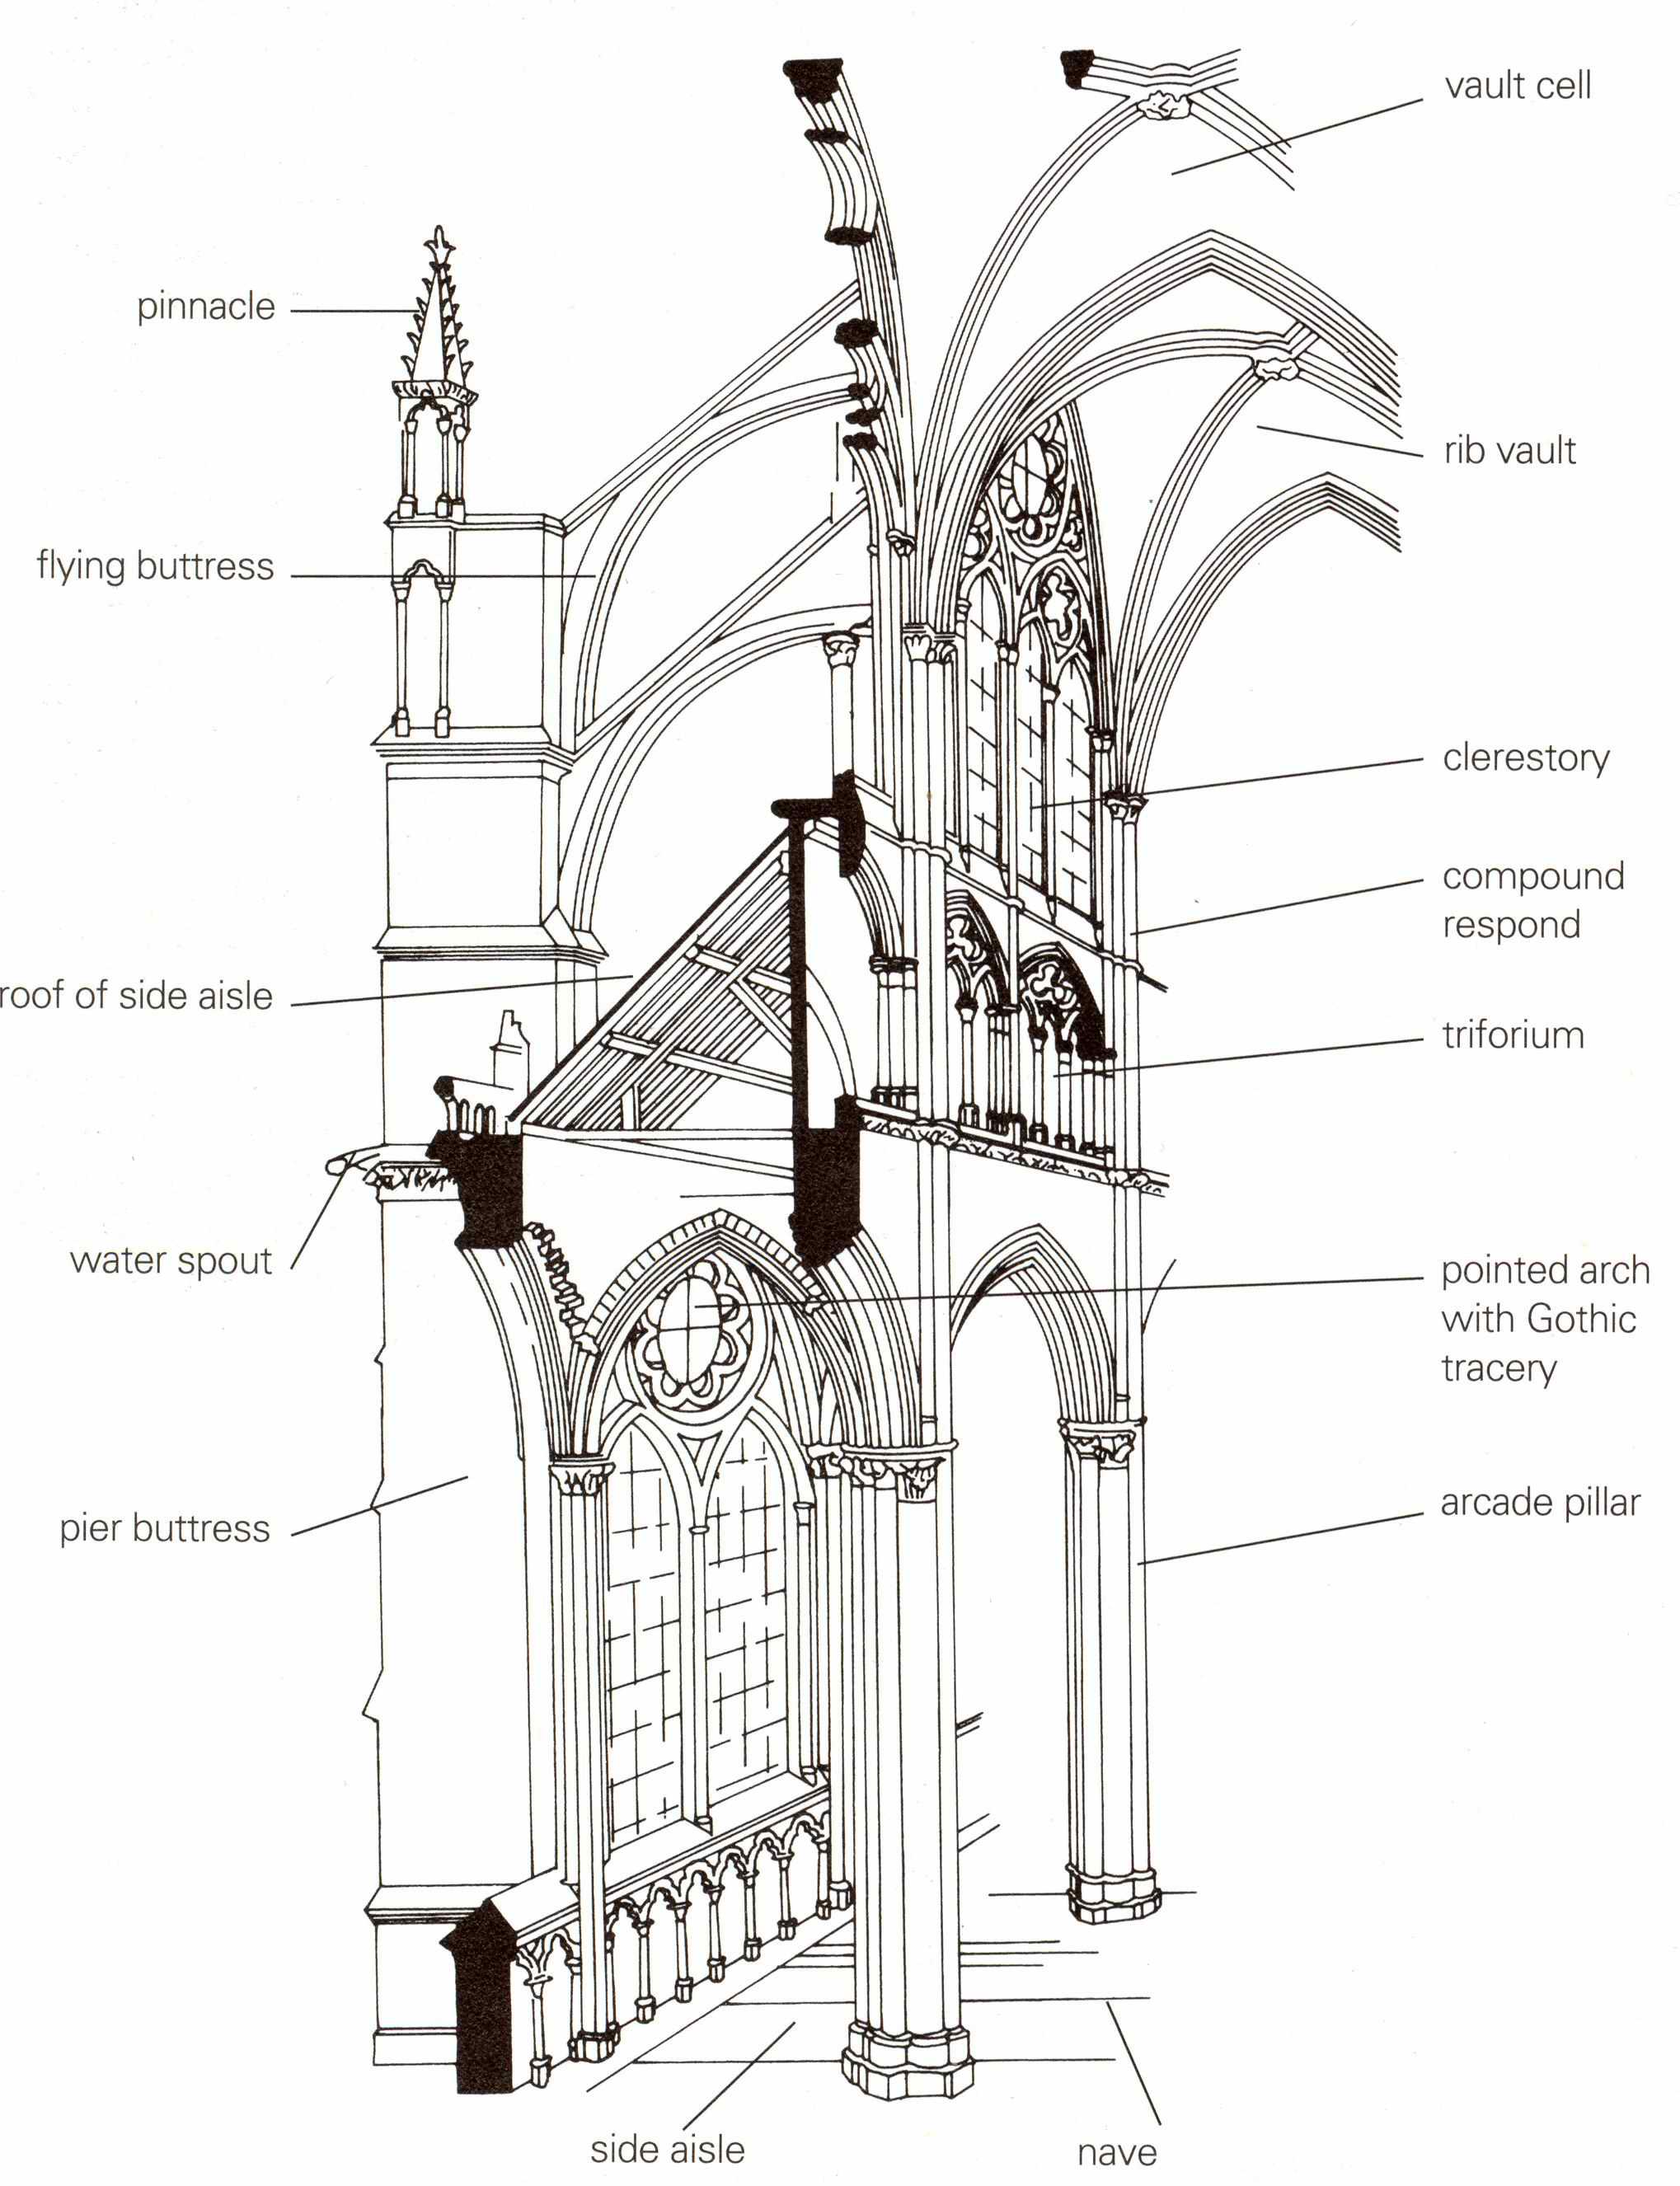 哥特式建筑与古典建筑最明显的三个区别 a.尖拱券 b.肋骨拱 c.